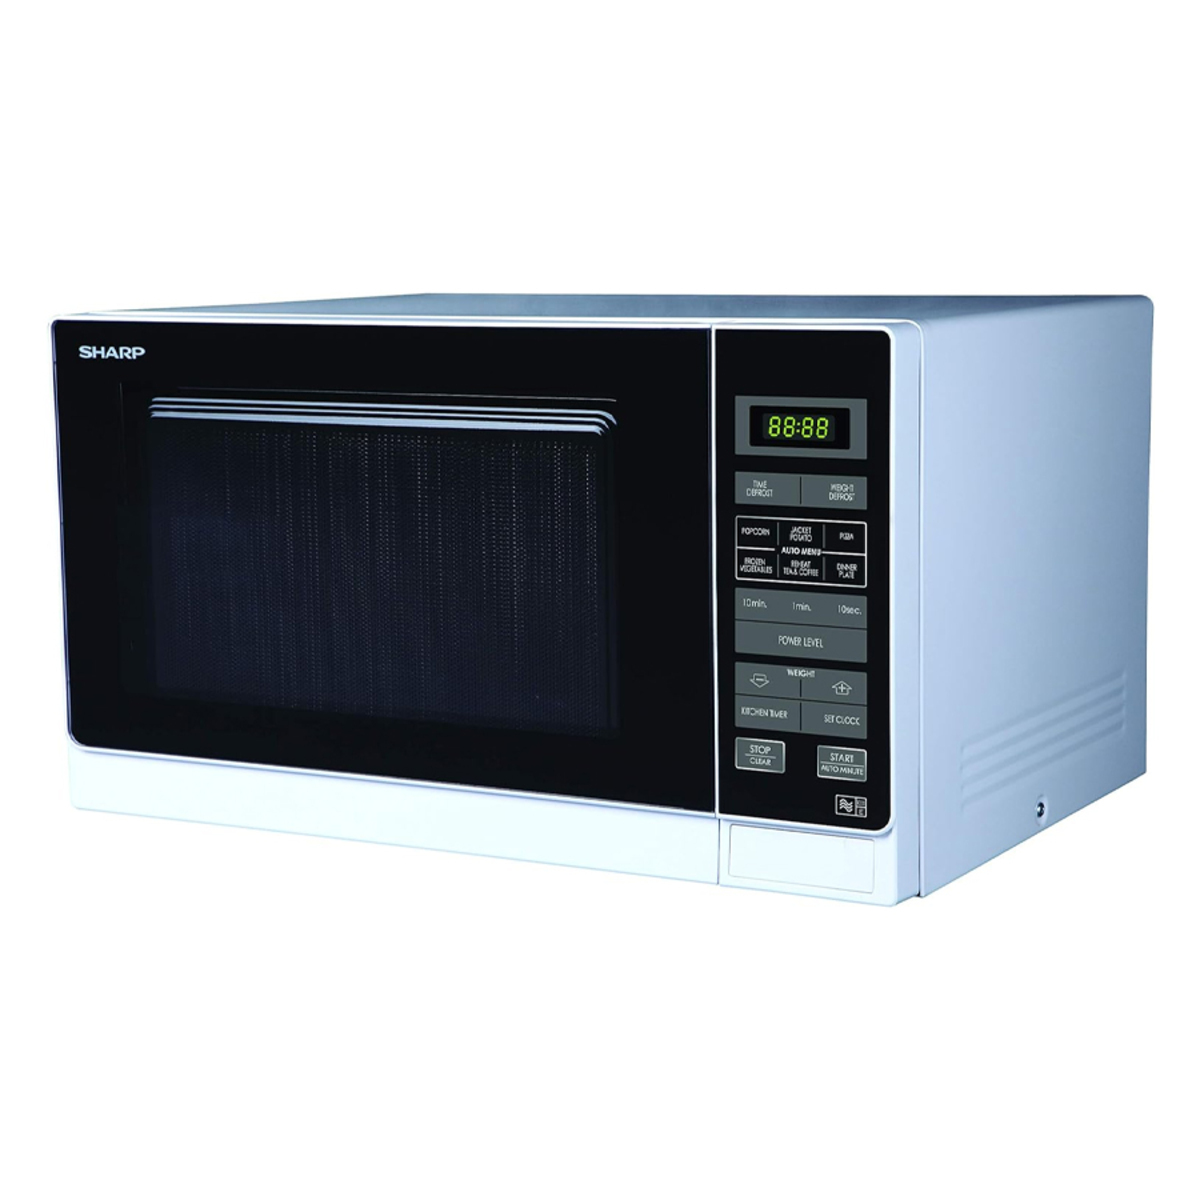 Sharp R372WM 25 Litre Solo Microwave Oven, White